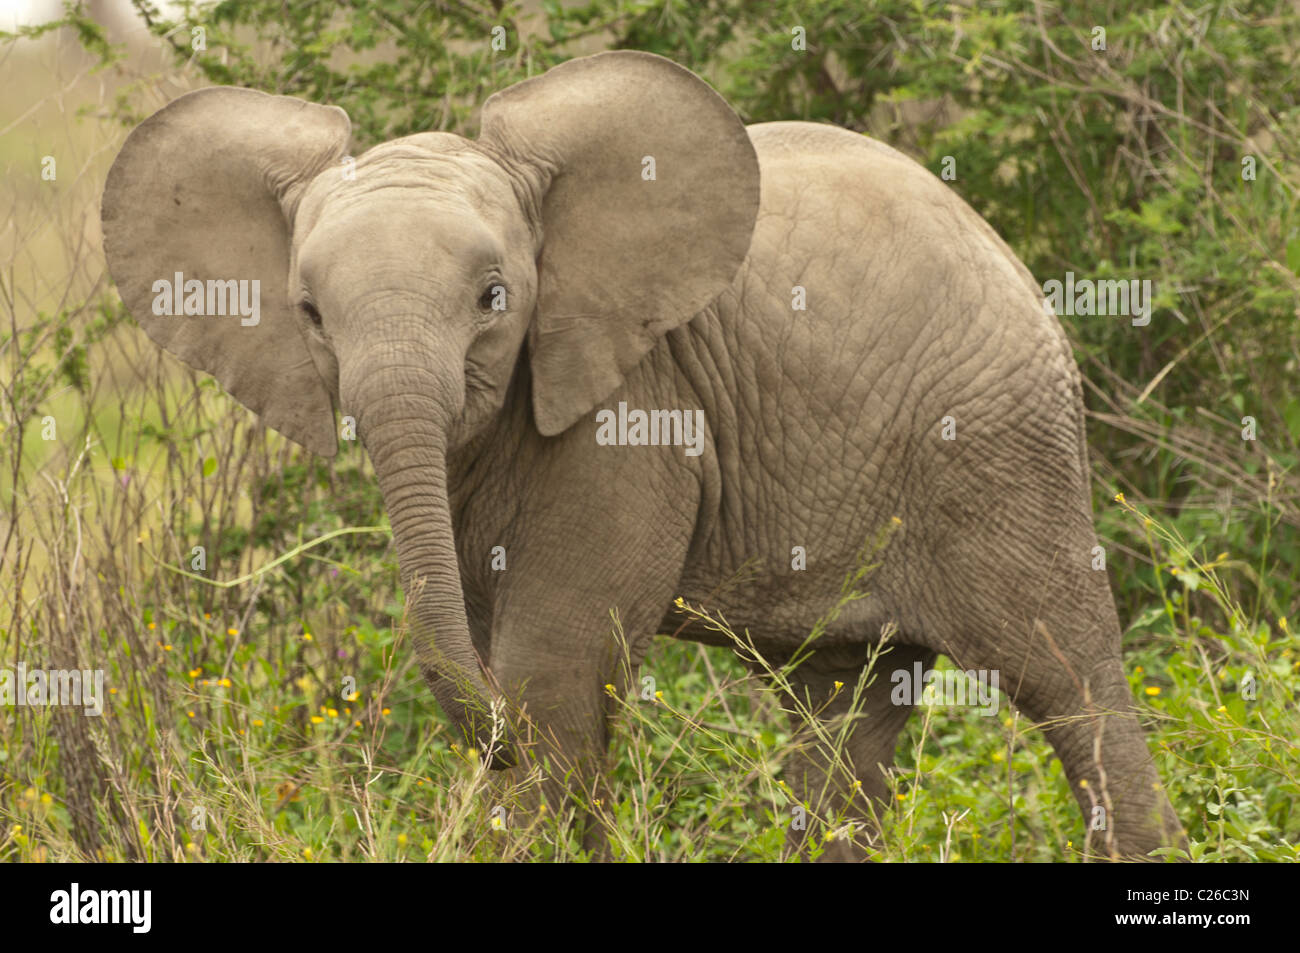 Stock Foto von einem Baby-Elefanten in den Wald, mit seinen großen Ohren auf dem Display. Stockfoto